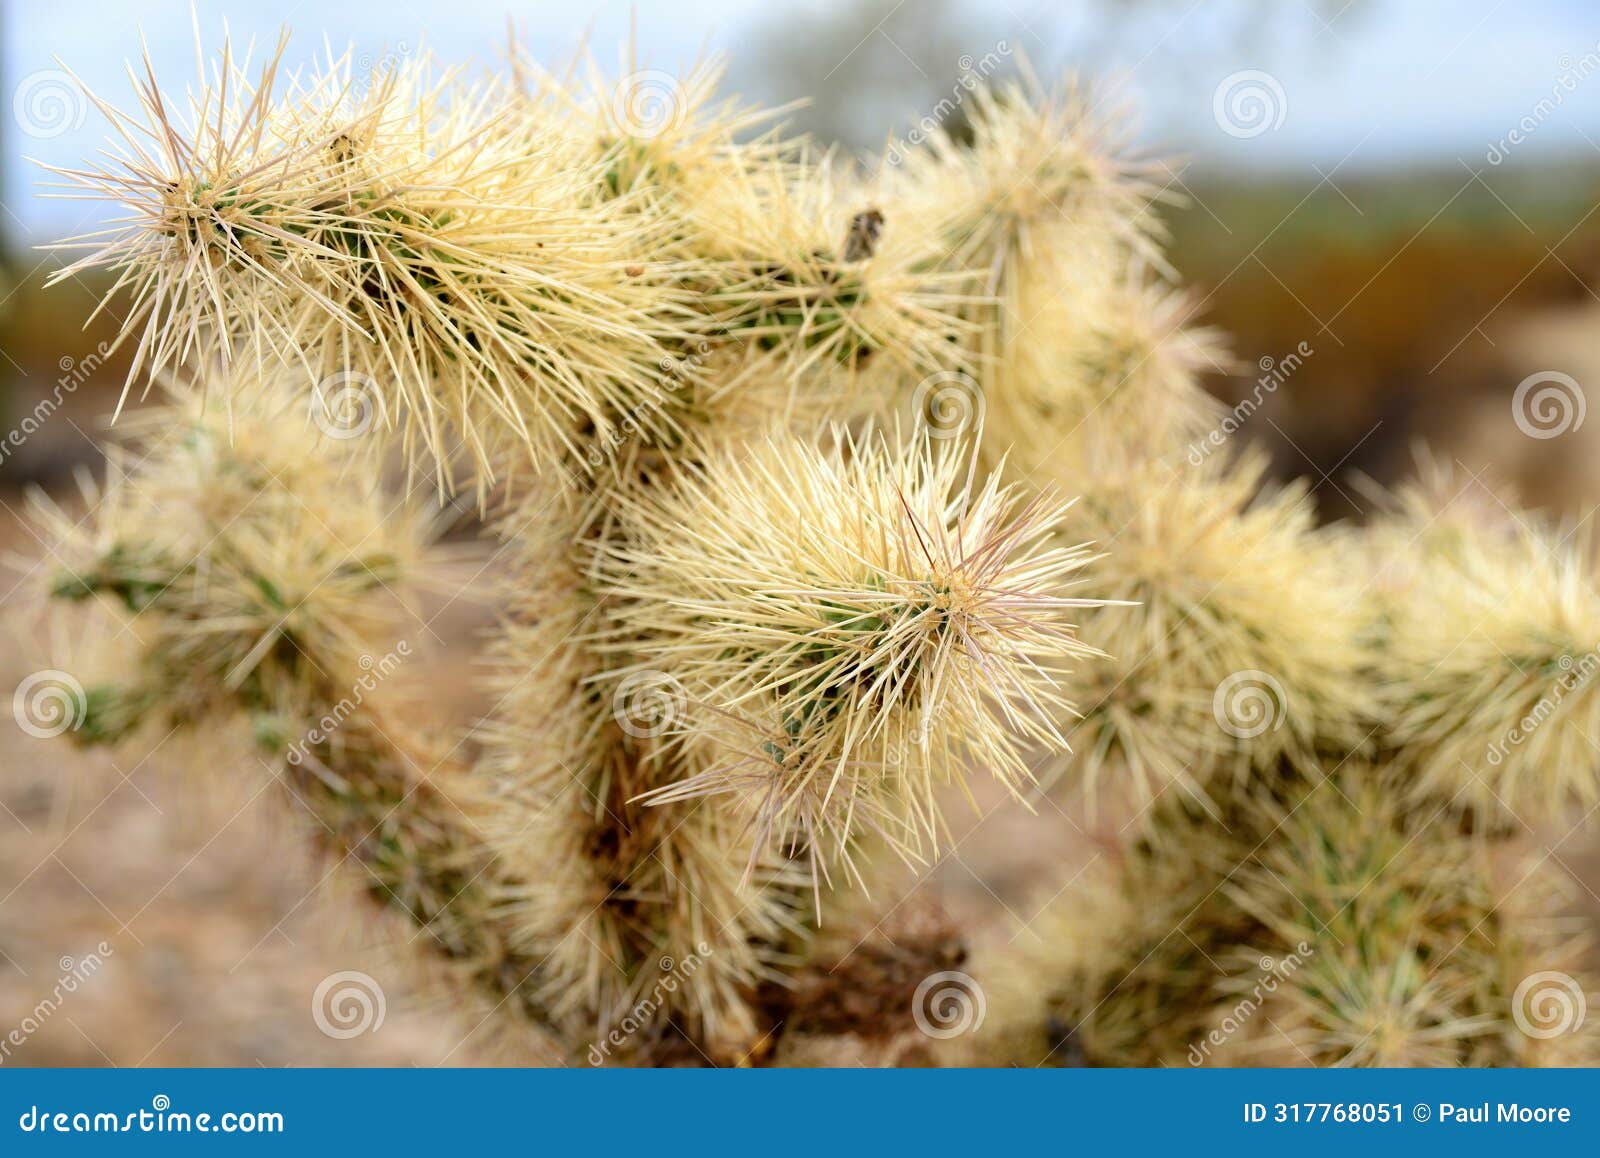 cholla cactus, close up, sonora desert, mid spring